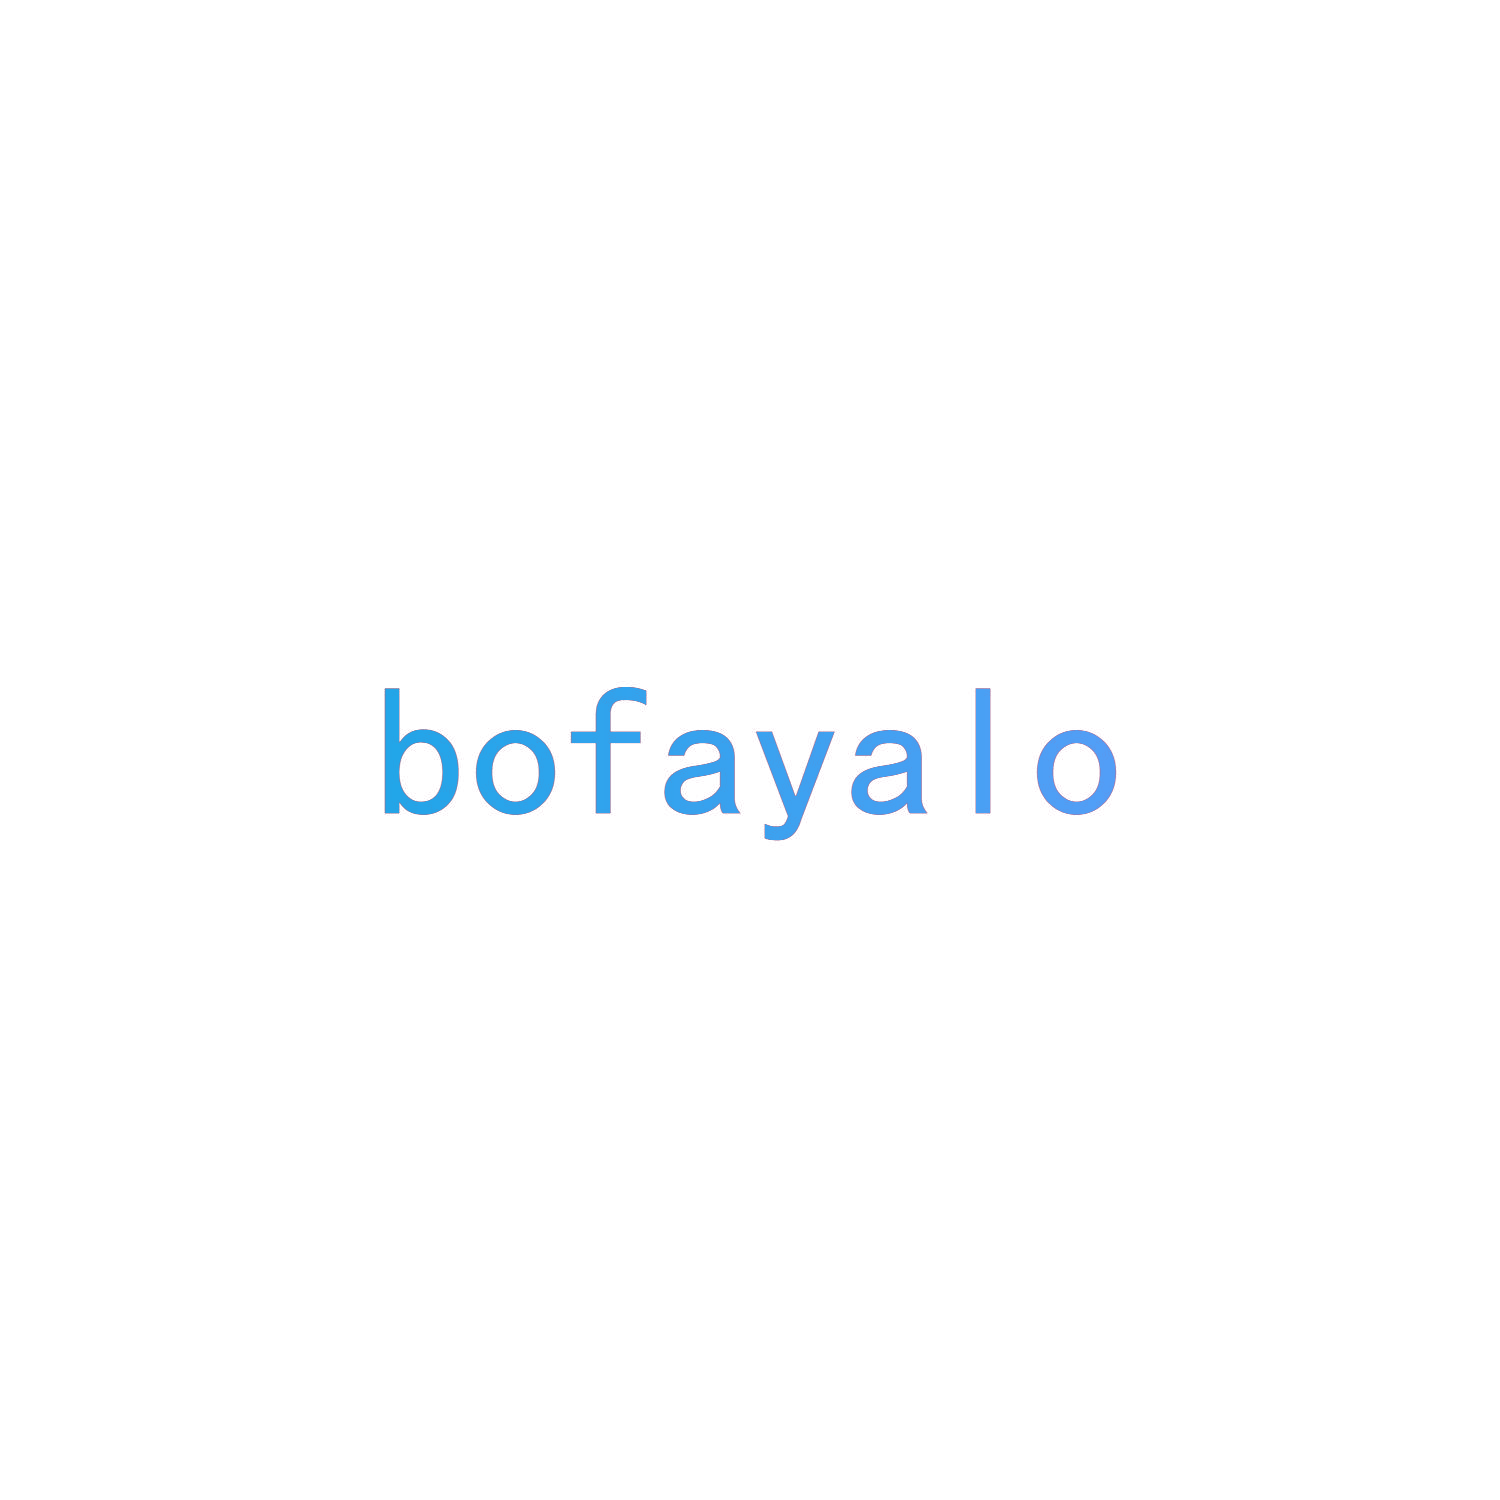 BOFAYALO